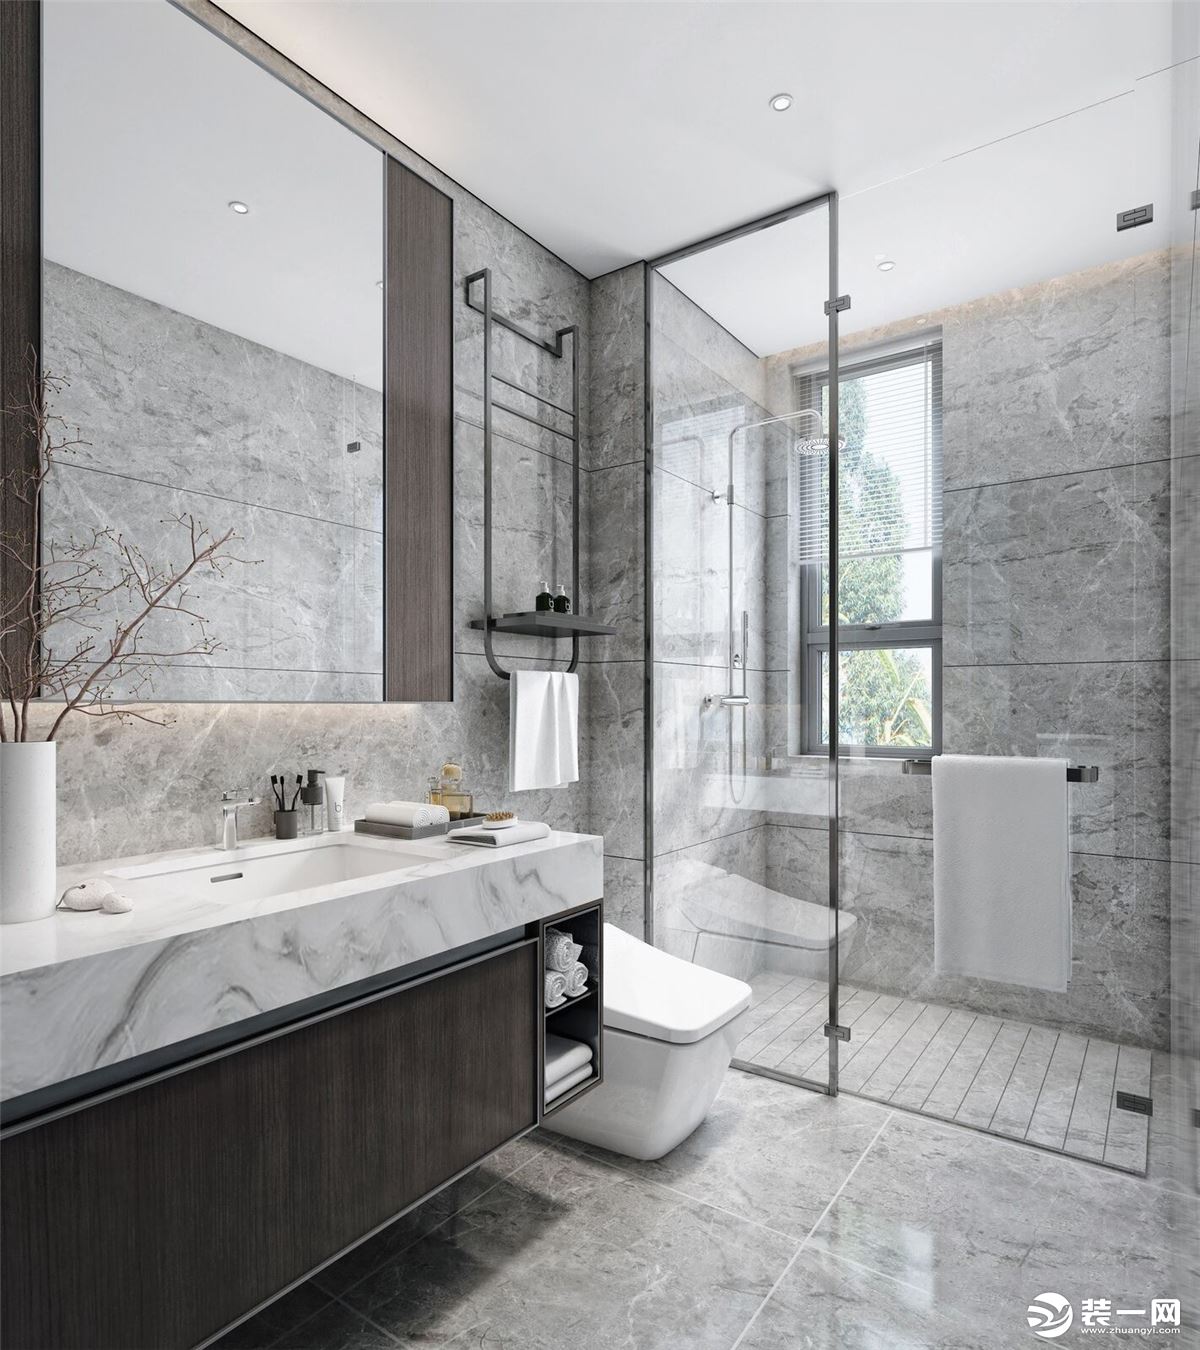 客卫墙地面通铺深色纹理的大理石，洁具选用简约款，淋浴房则采用极简的边框款式。